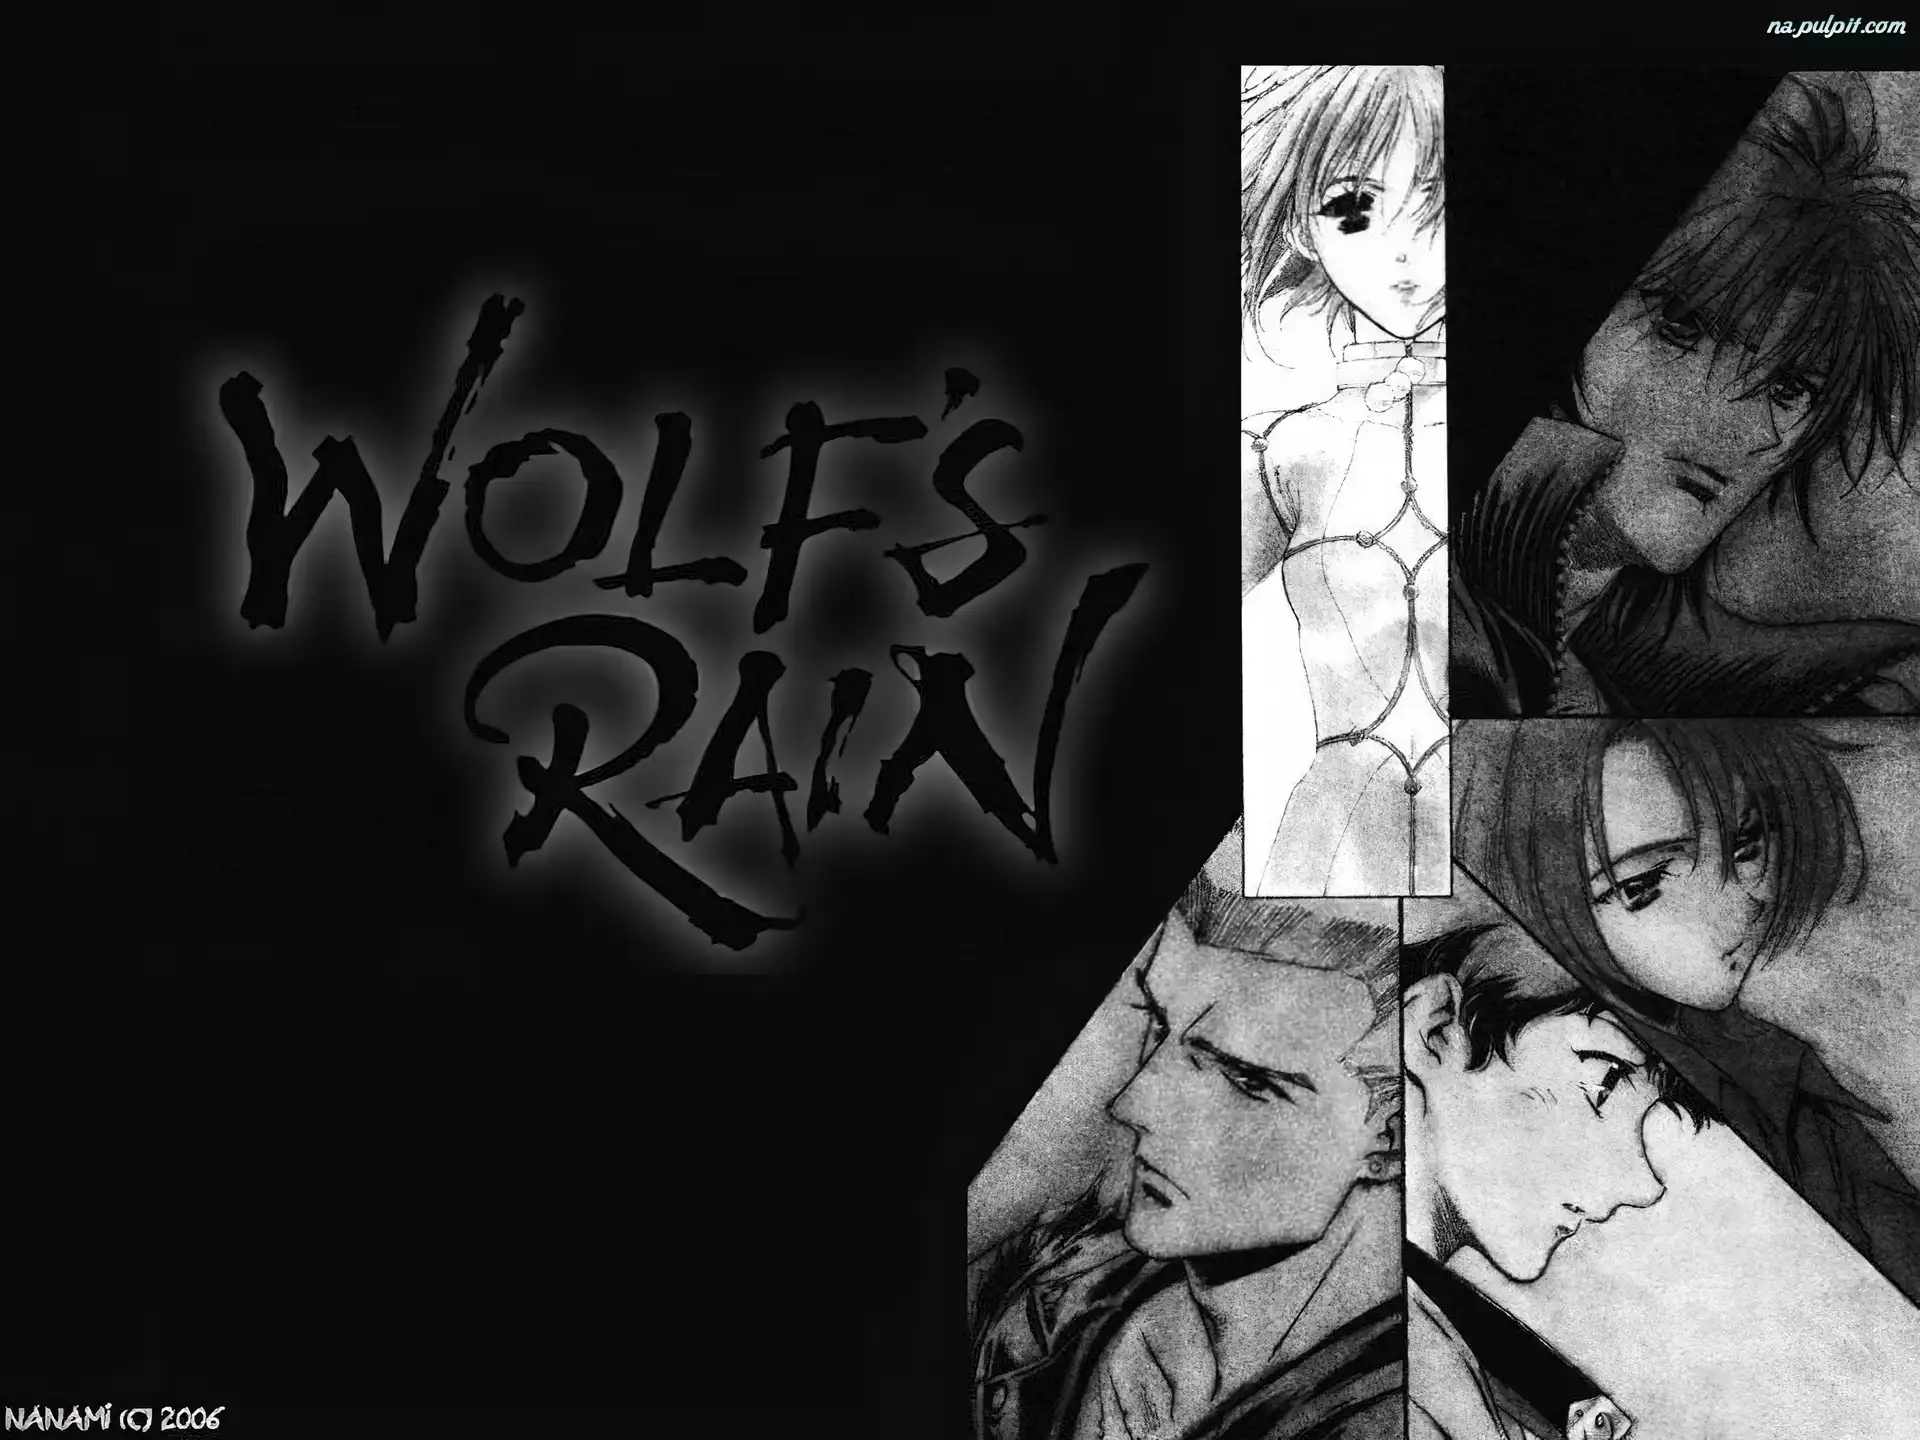 rysunki, Wolfs Rain, postacie